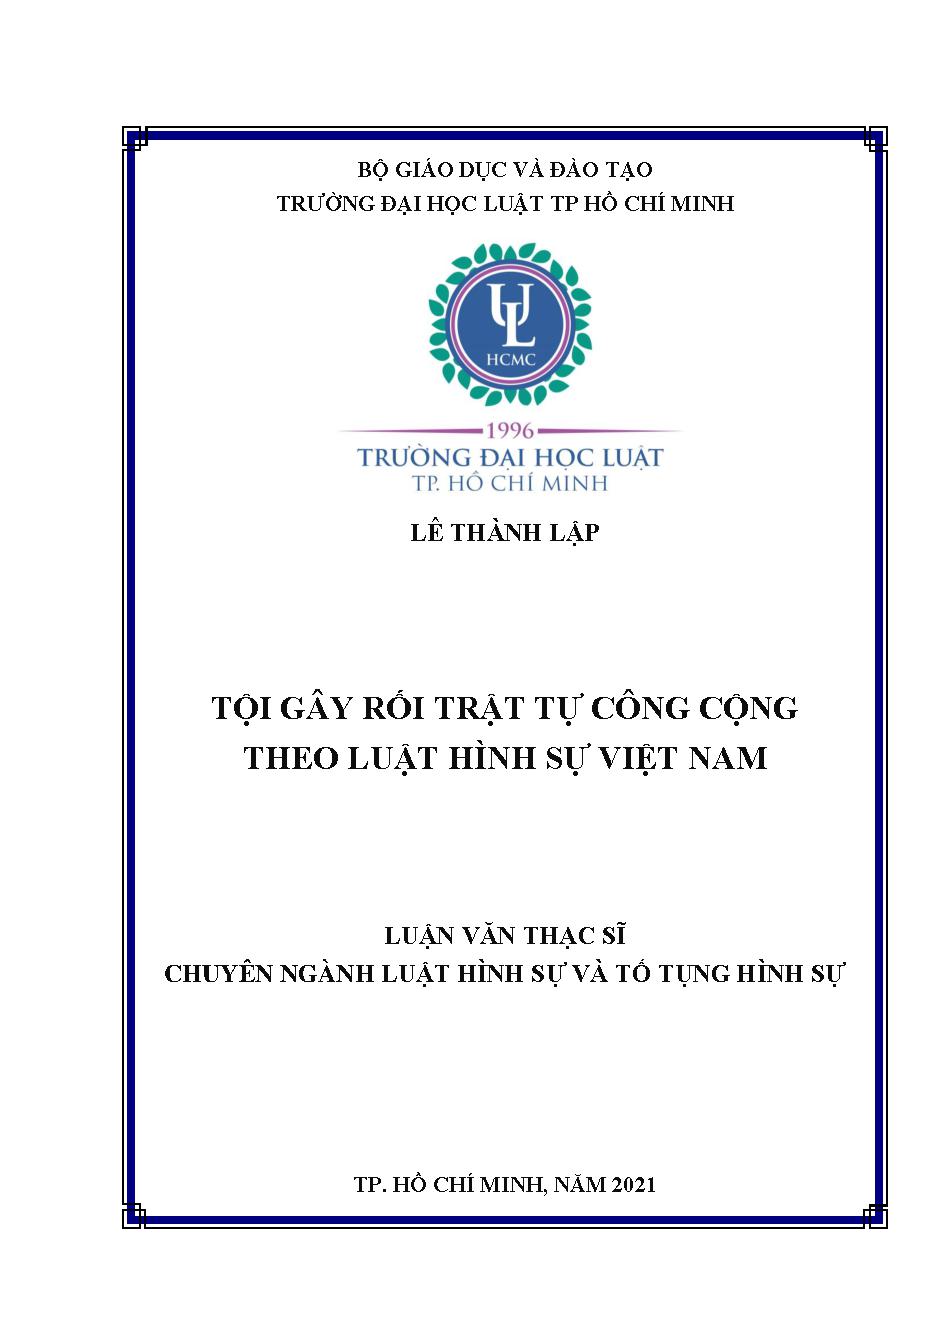 Tội gây rối trật tự công cộng theo luật hình sự Việt Nam